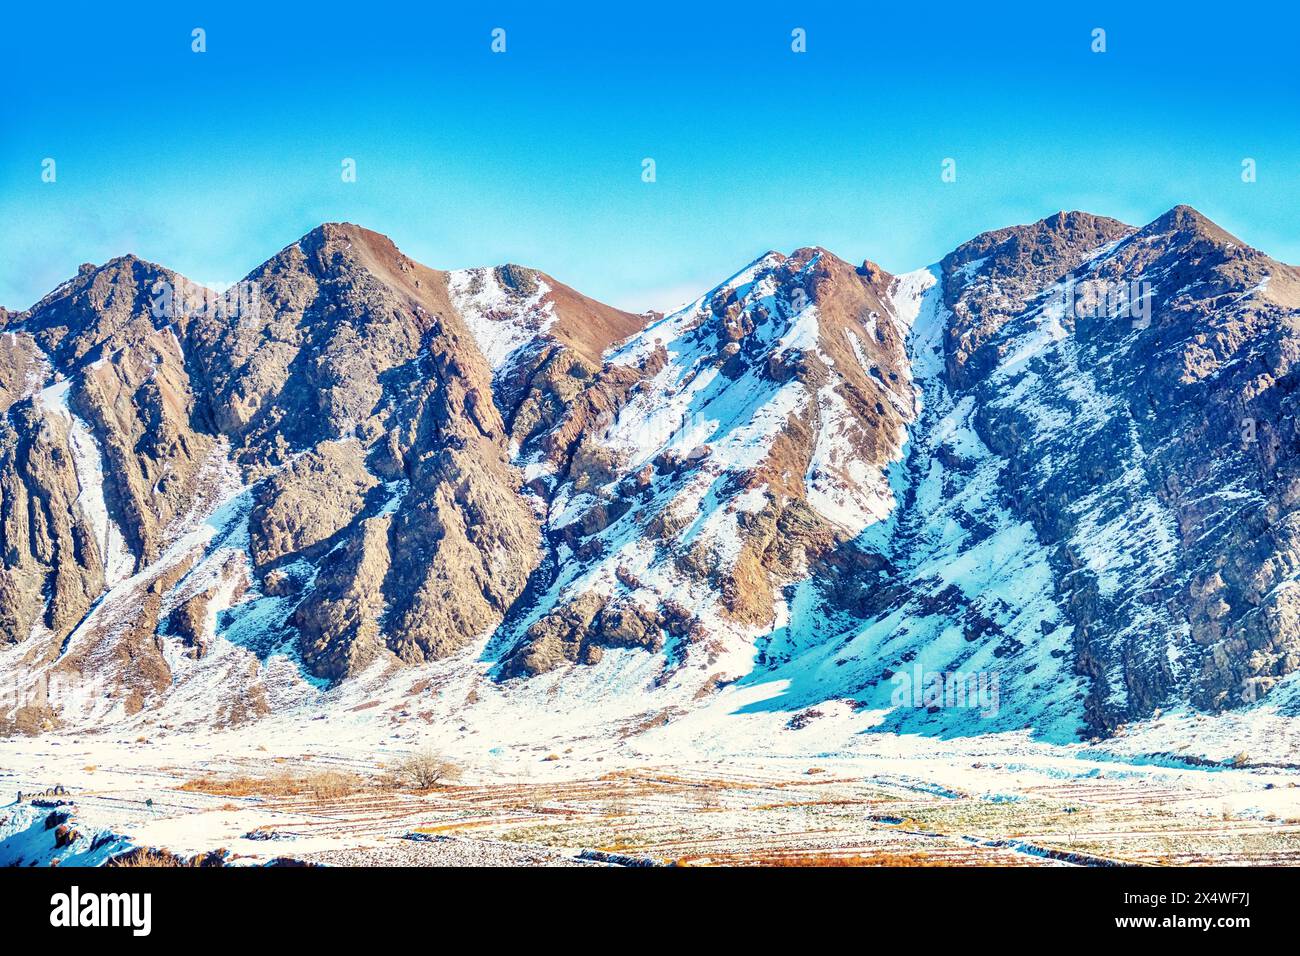 Gli speroni meridionali dei monti Zagros (Pathak) durante il periodo invernale della neve, gli strati calcarei. Vecchie montagne innevate con tracce di erosione dell'acqua ( Foto Stock